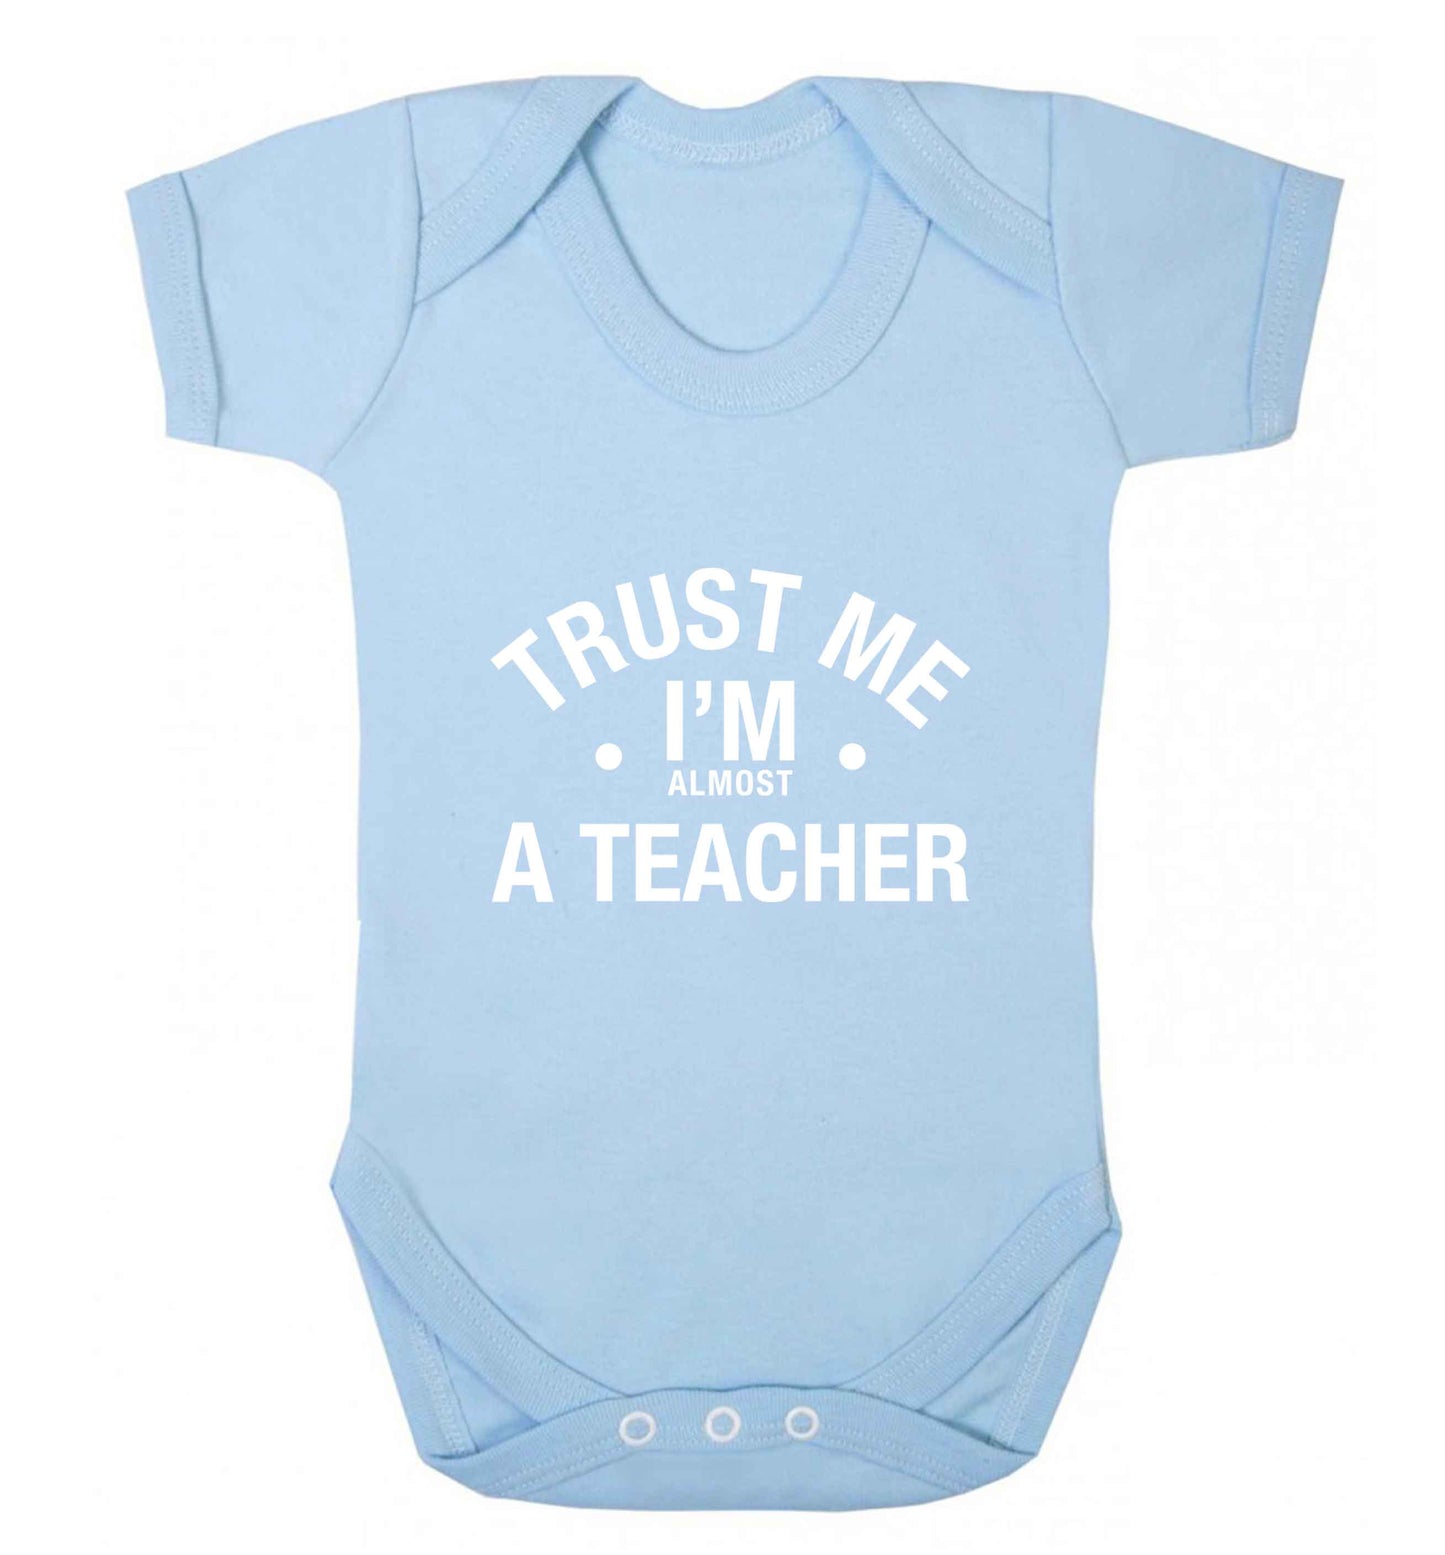 Trust me I'm almost a teacher baby vest pale blue 18-24 months